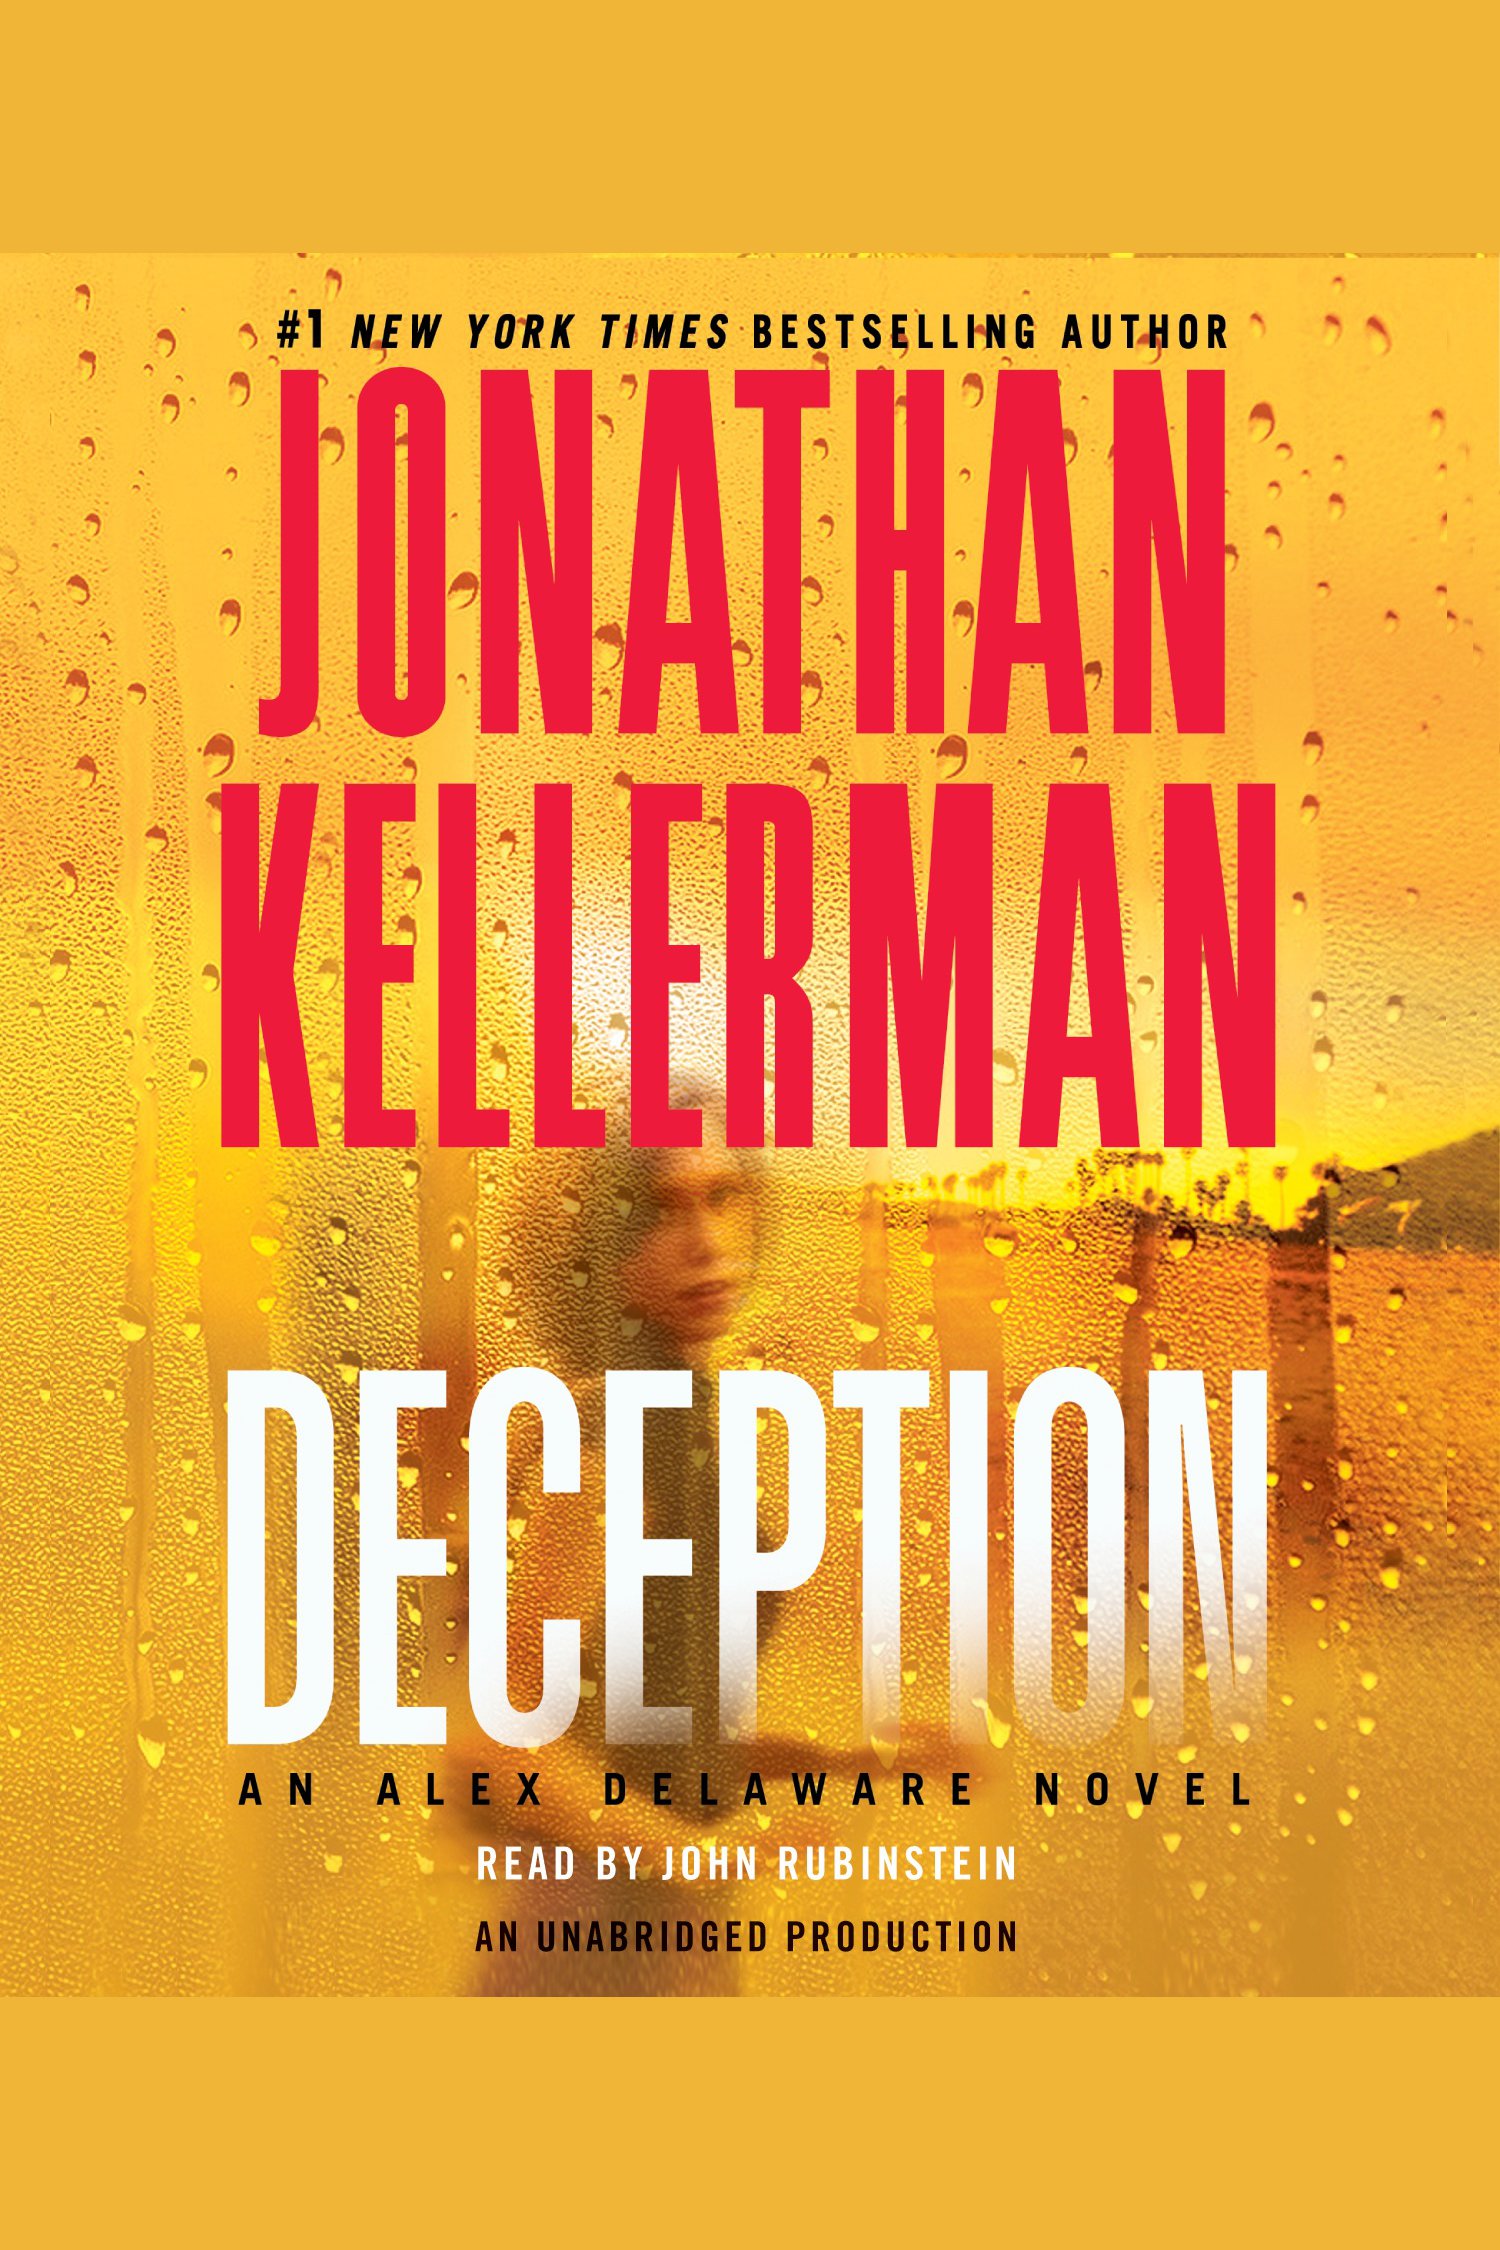 Umschlagbild für Deception [electronic resource] : An Alex Delaware Novel